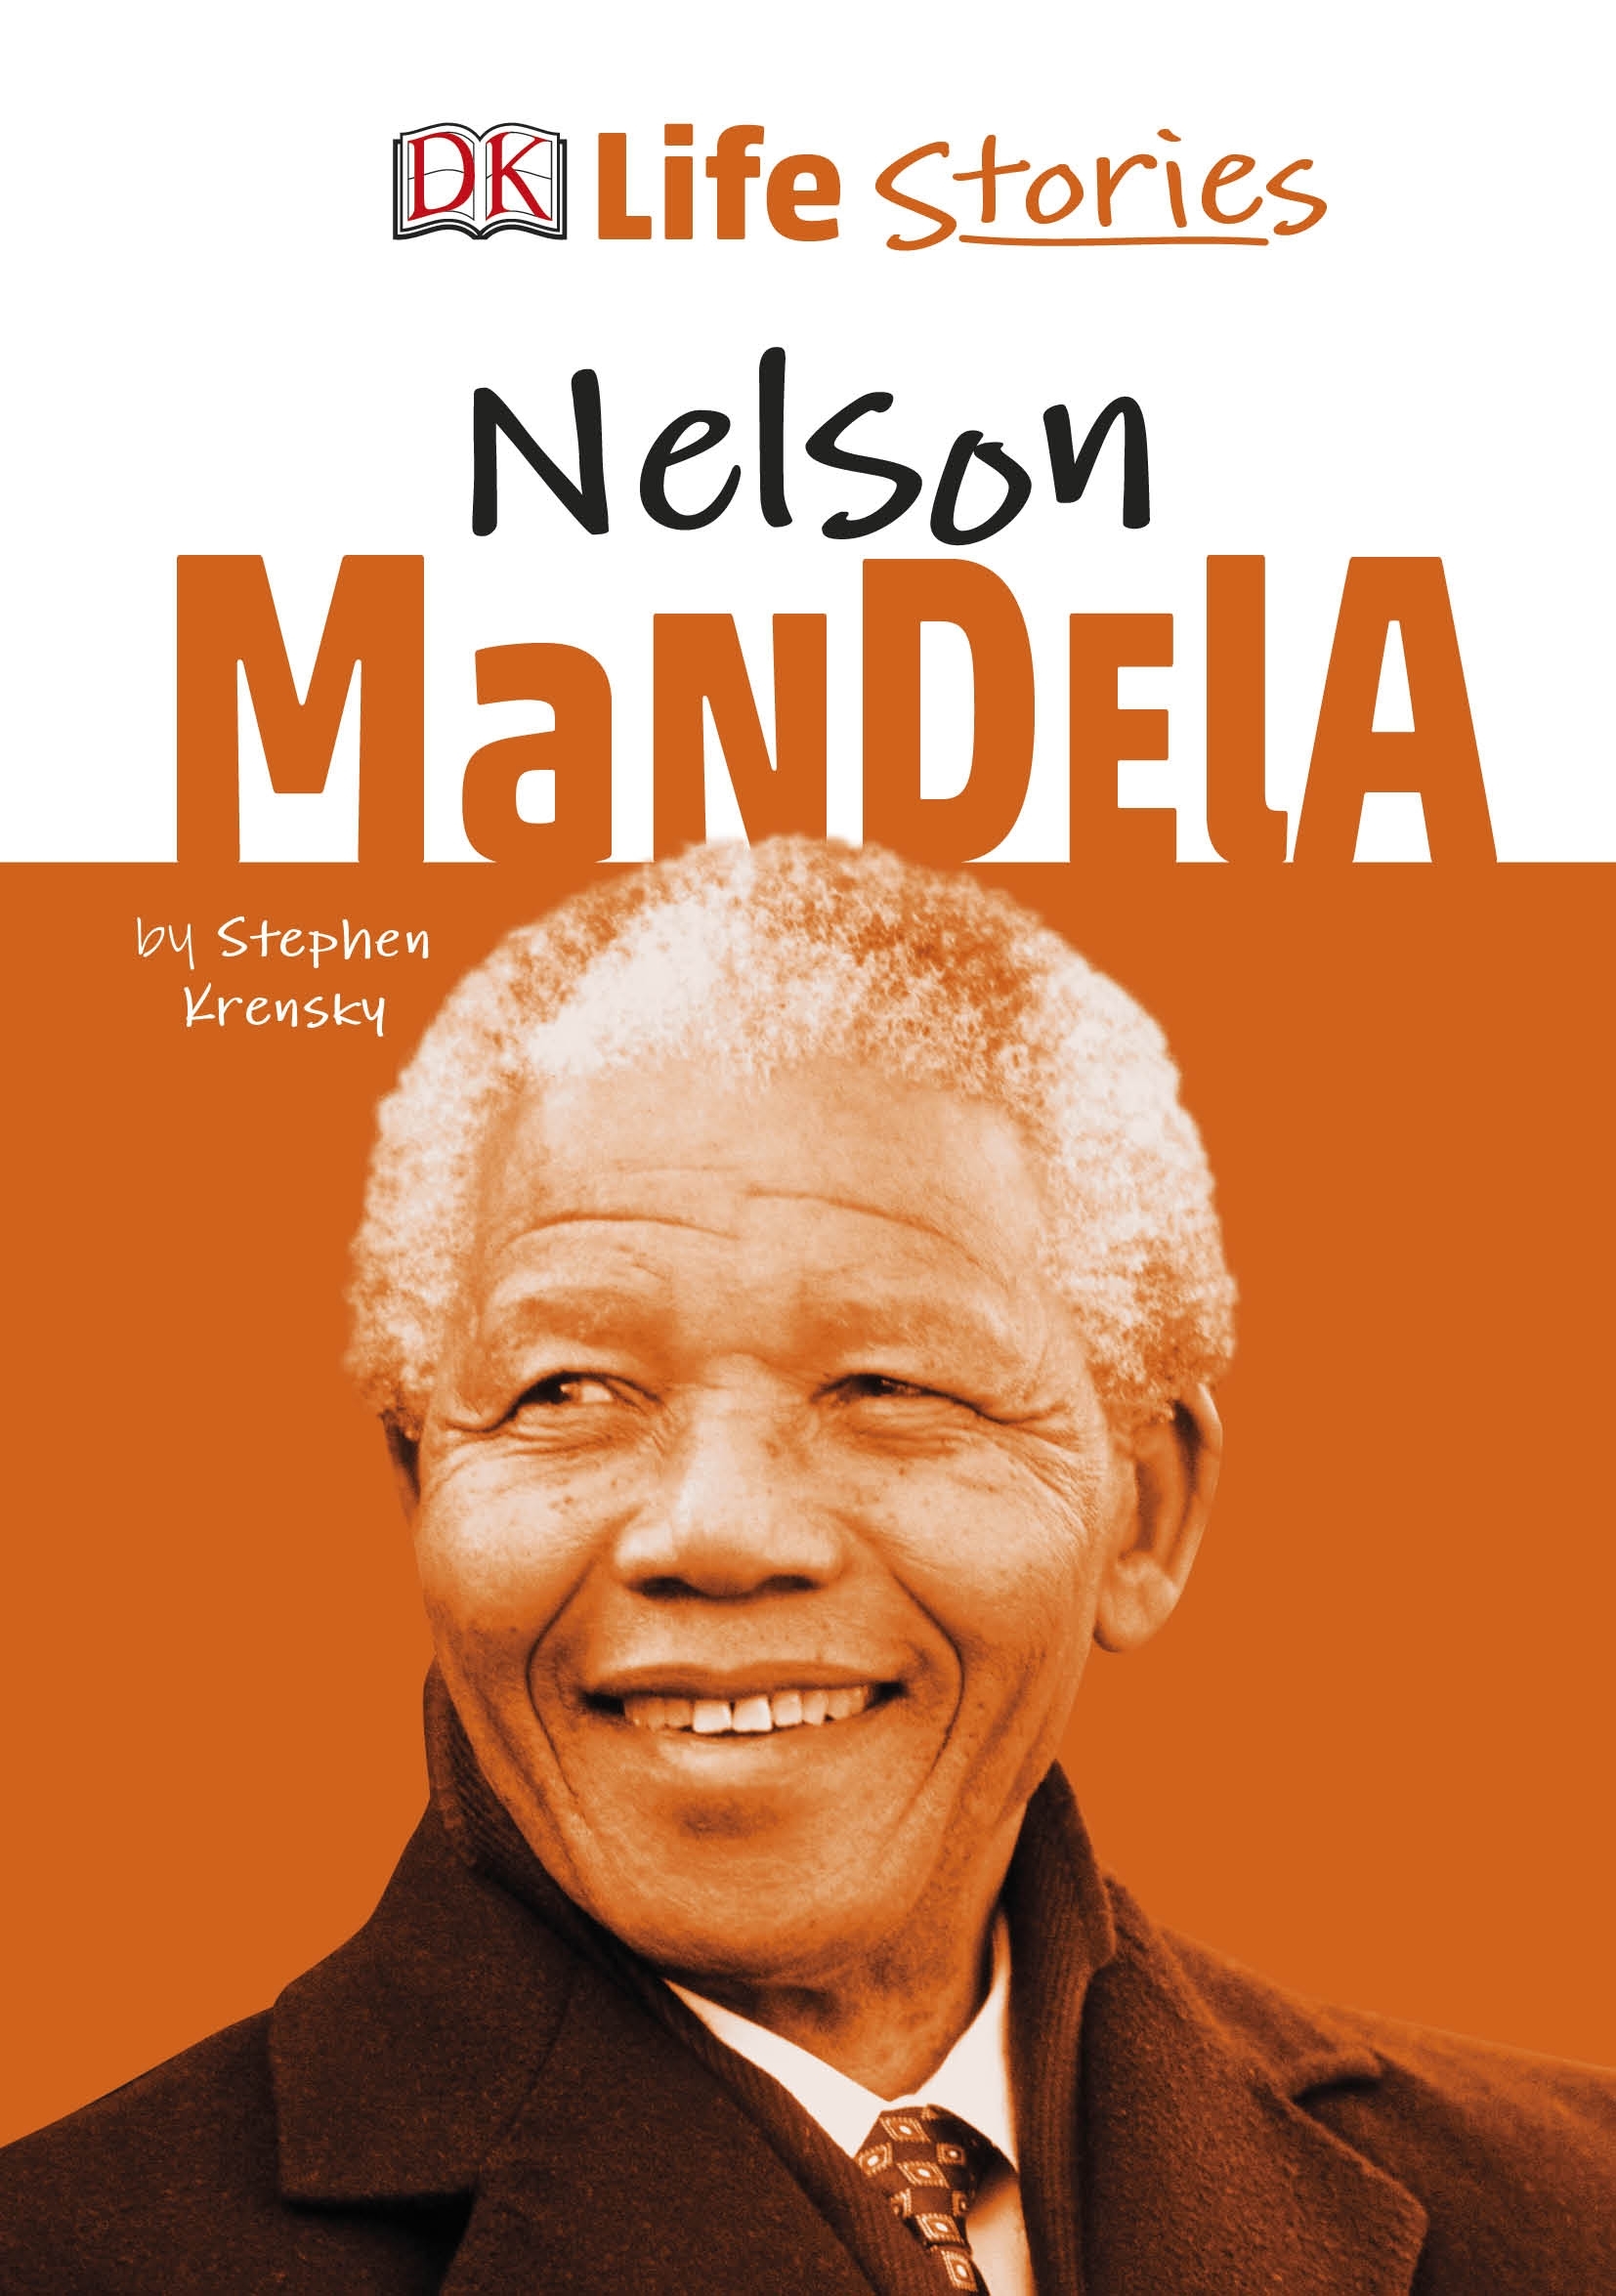 Dk Life Stories Nelson Mandela Penguin Books Australia